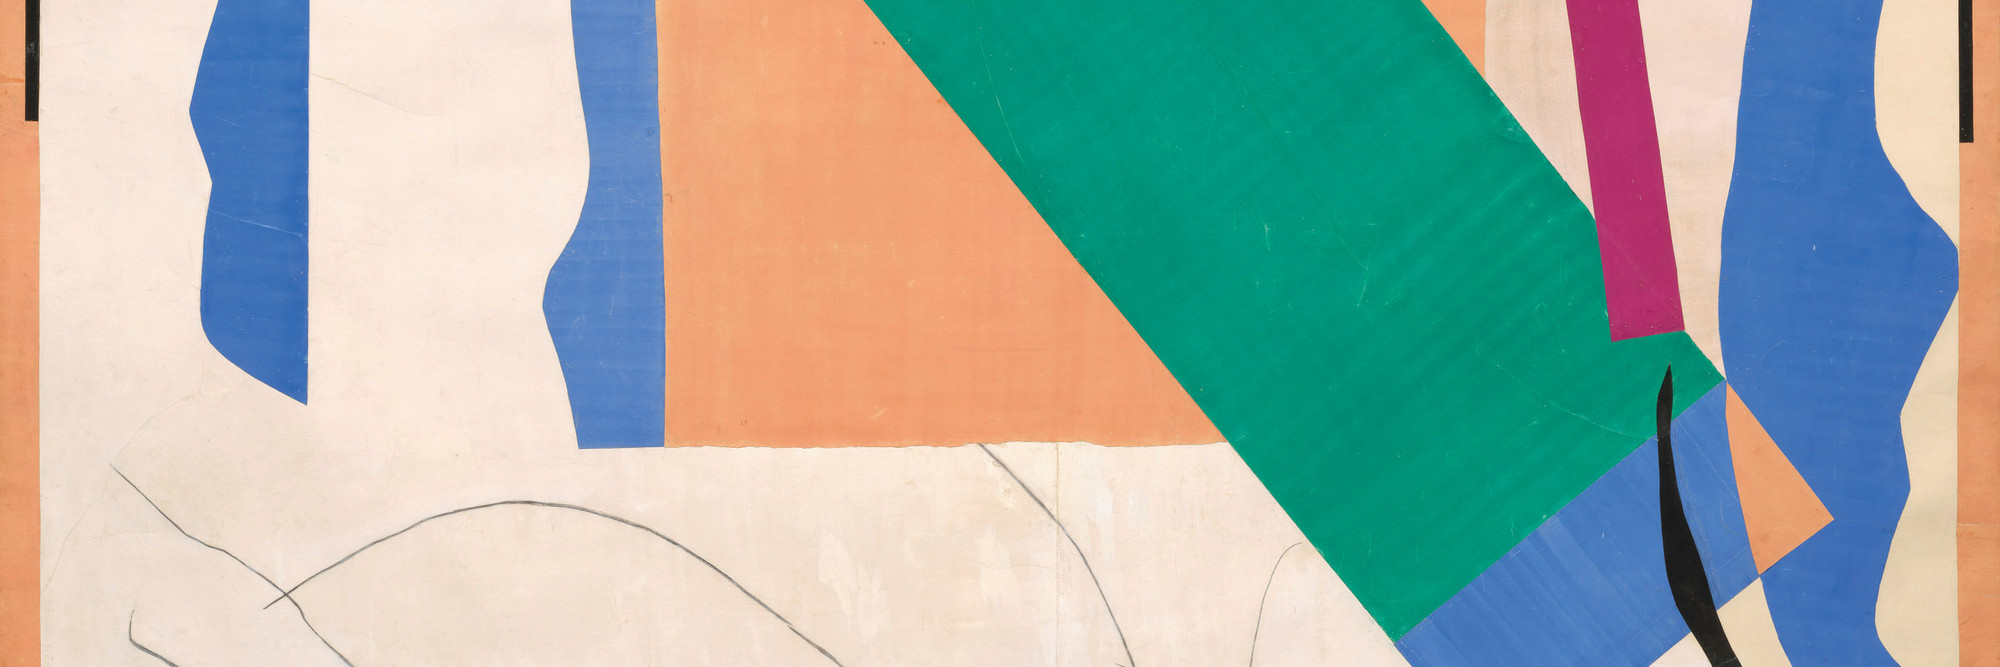 dauw Aan het liegen kijken Henri Matisse: The Cut-Outs | MoMA